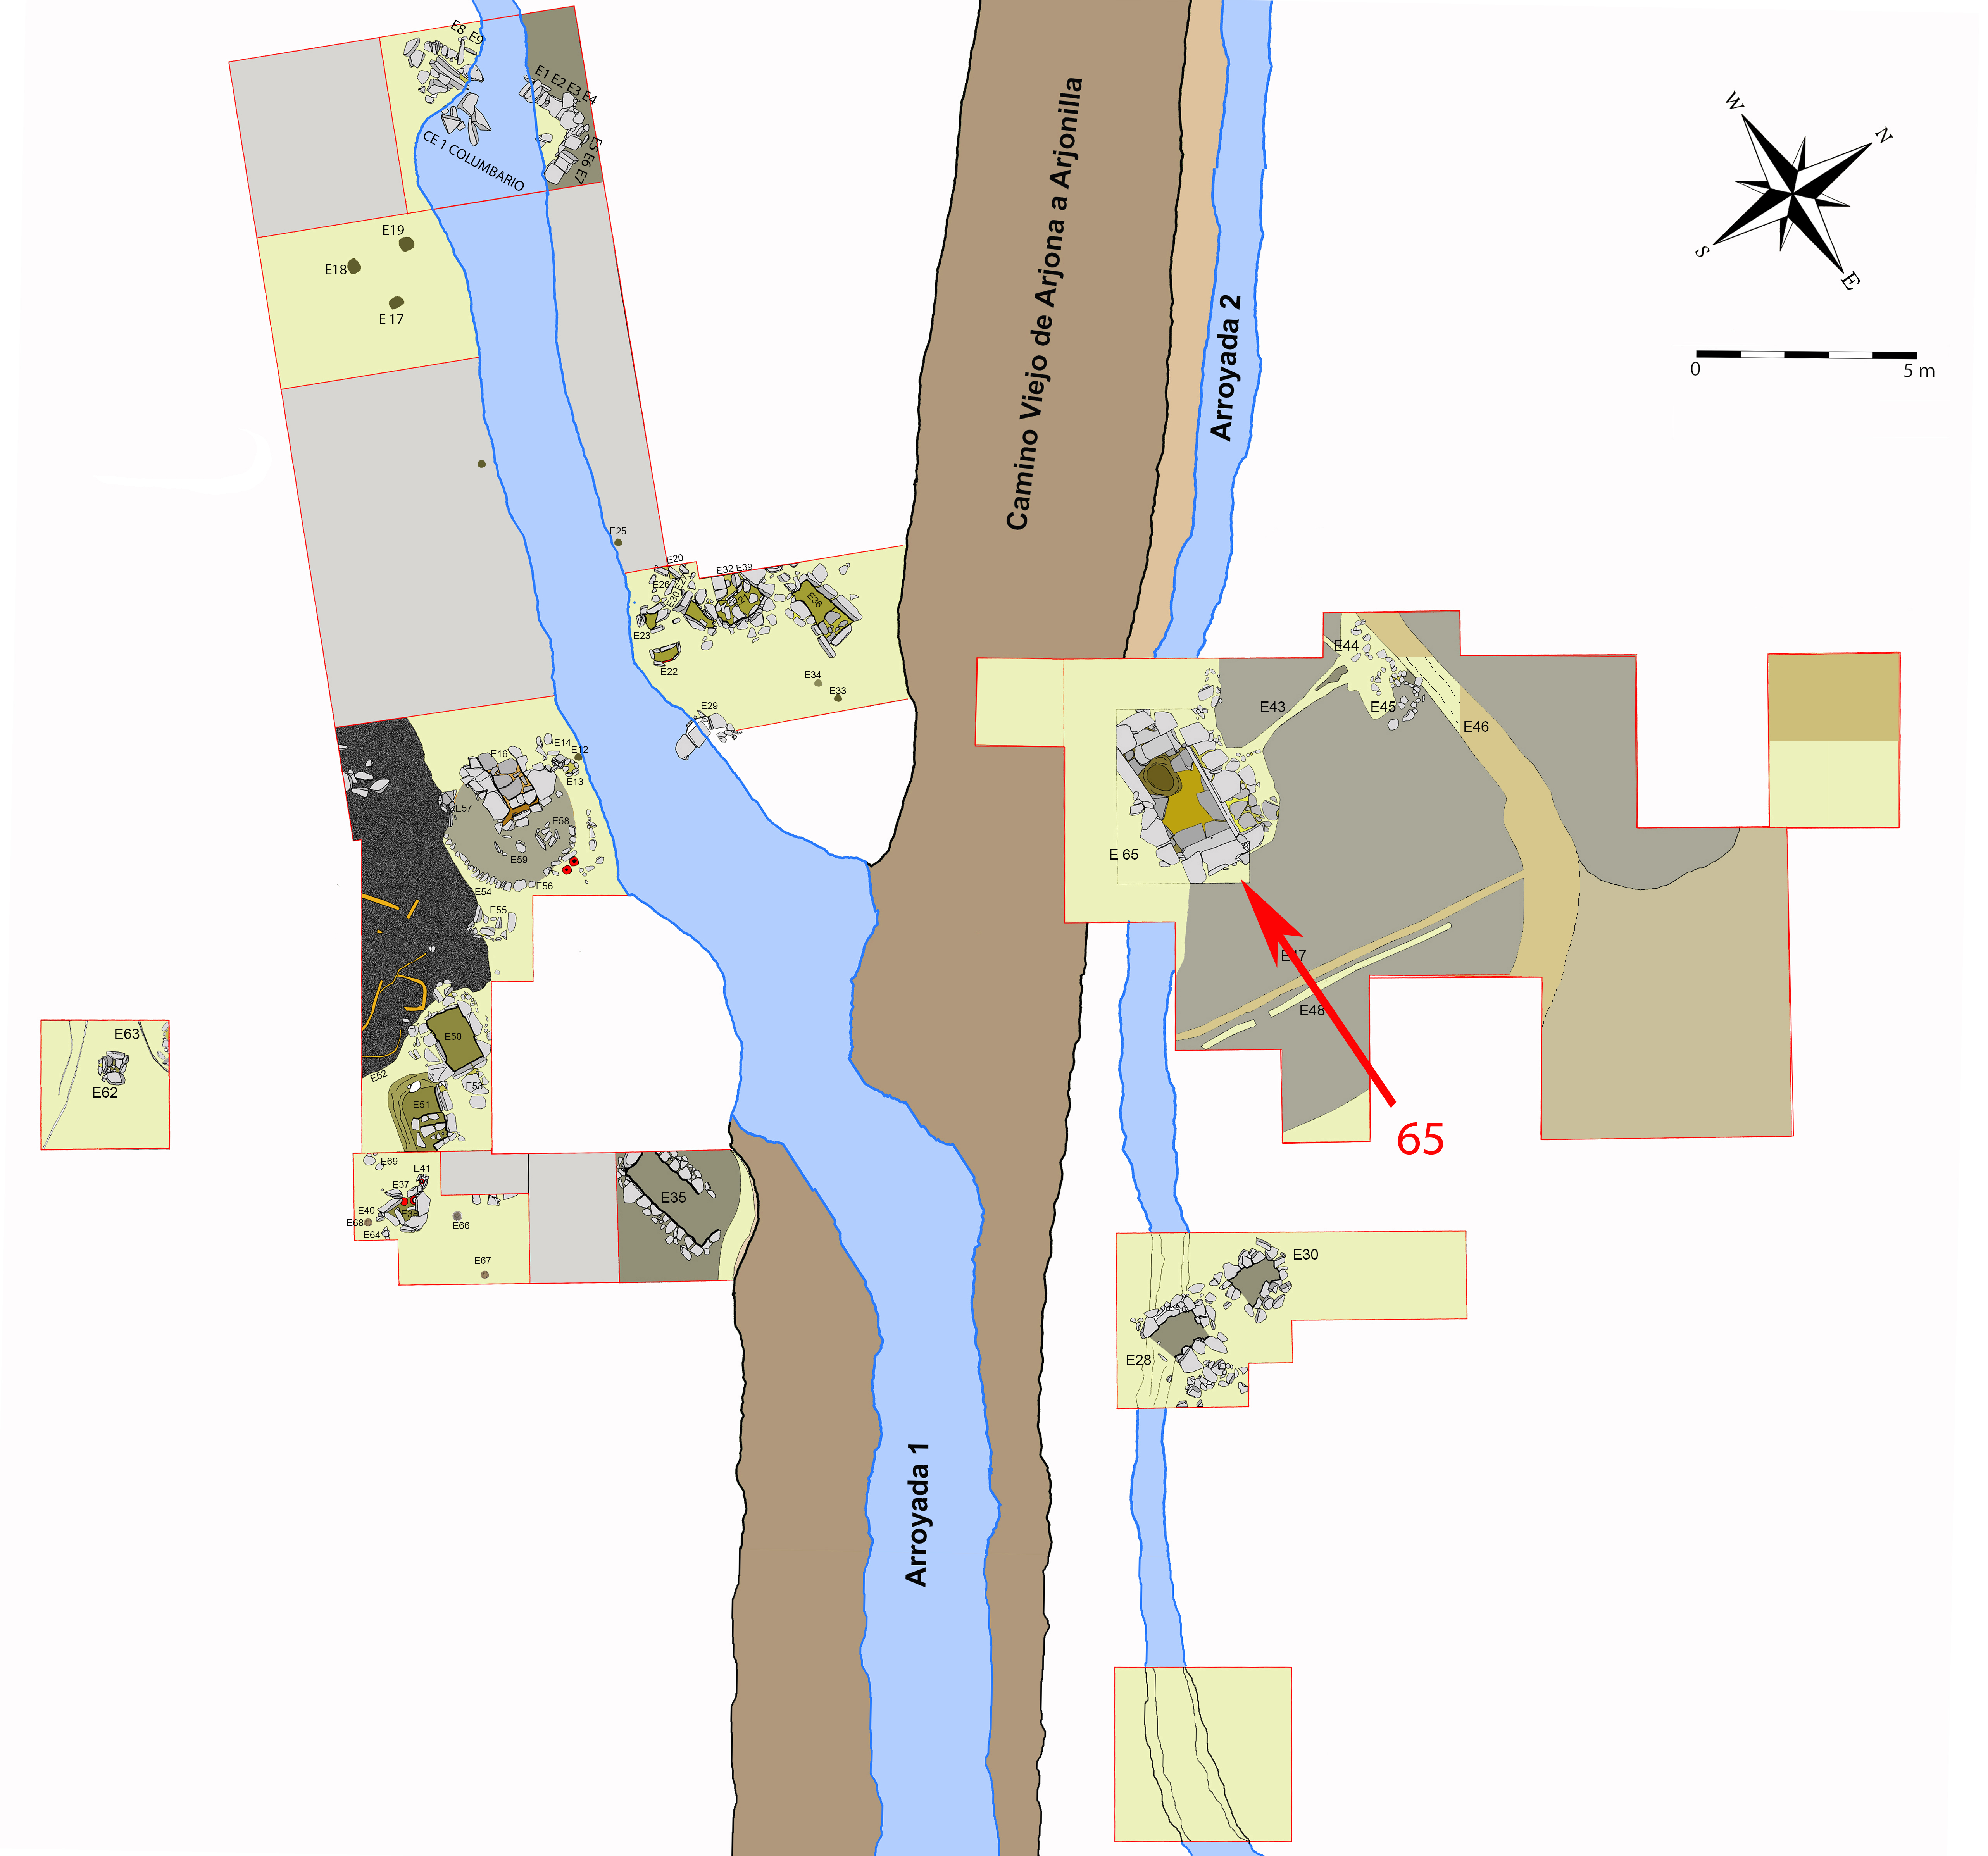 Plano general de la necrópolis de Piquía y localización de la tumba 65